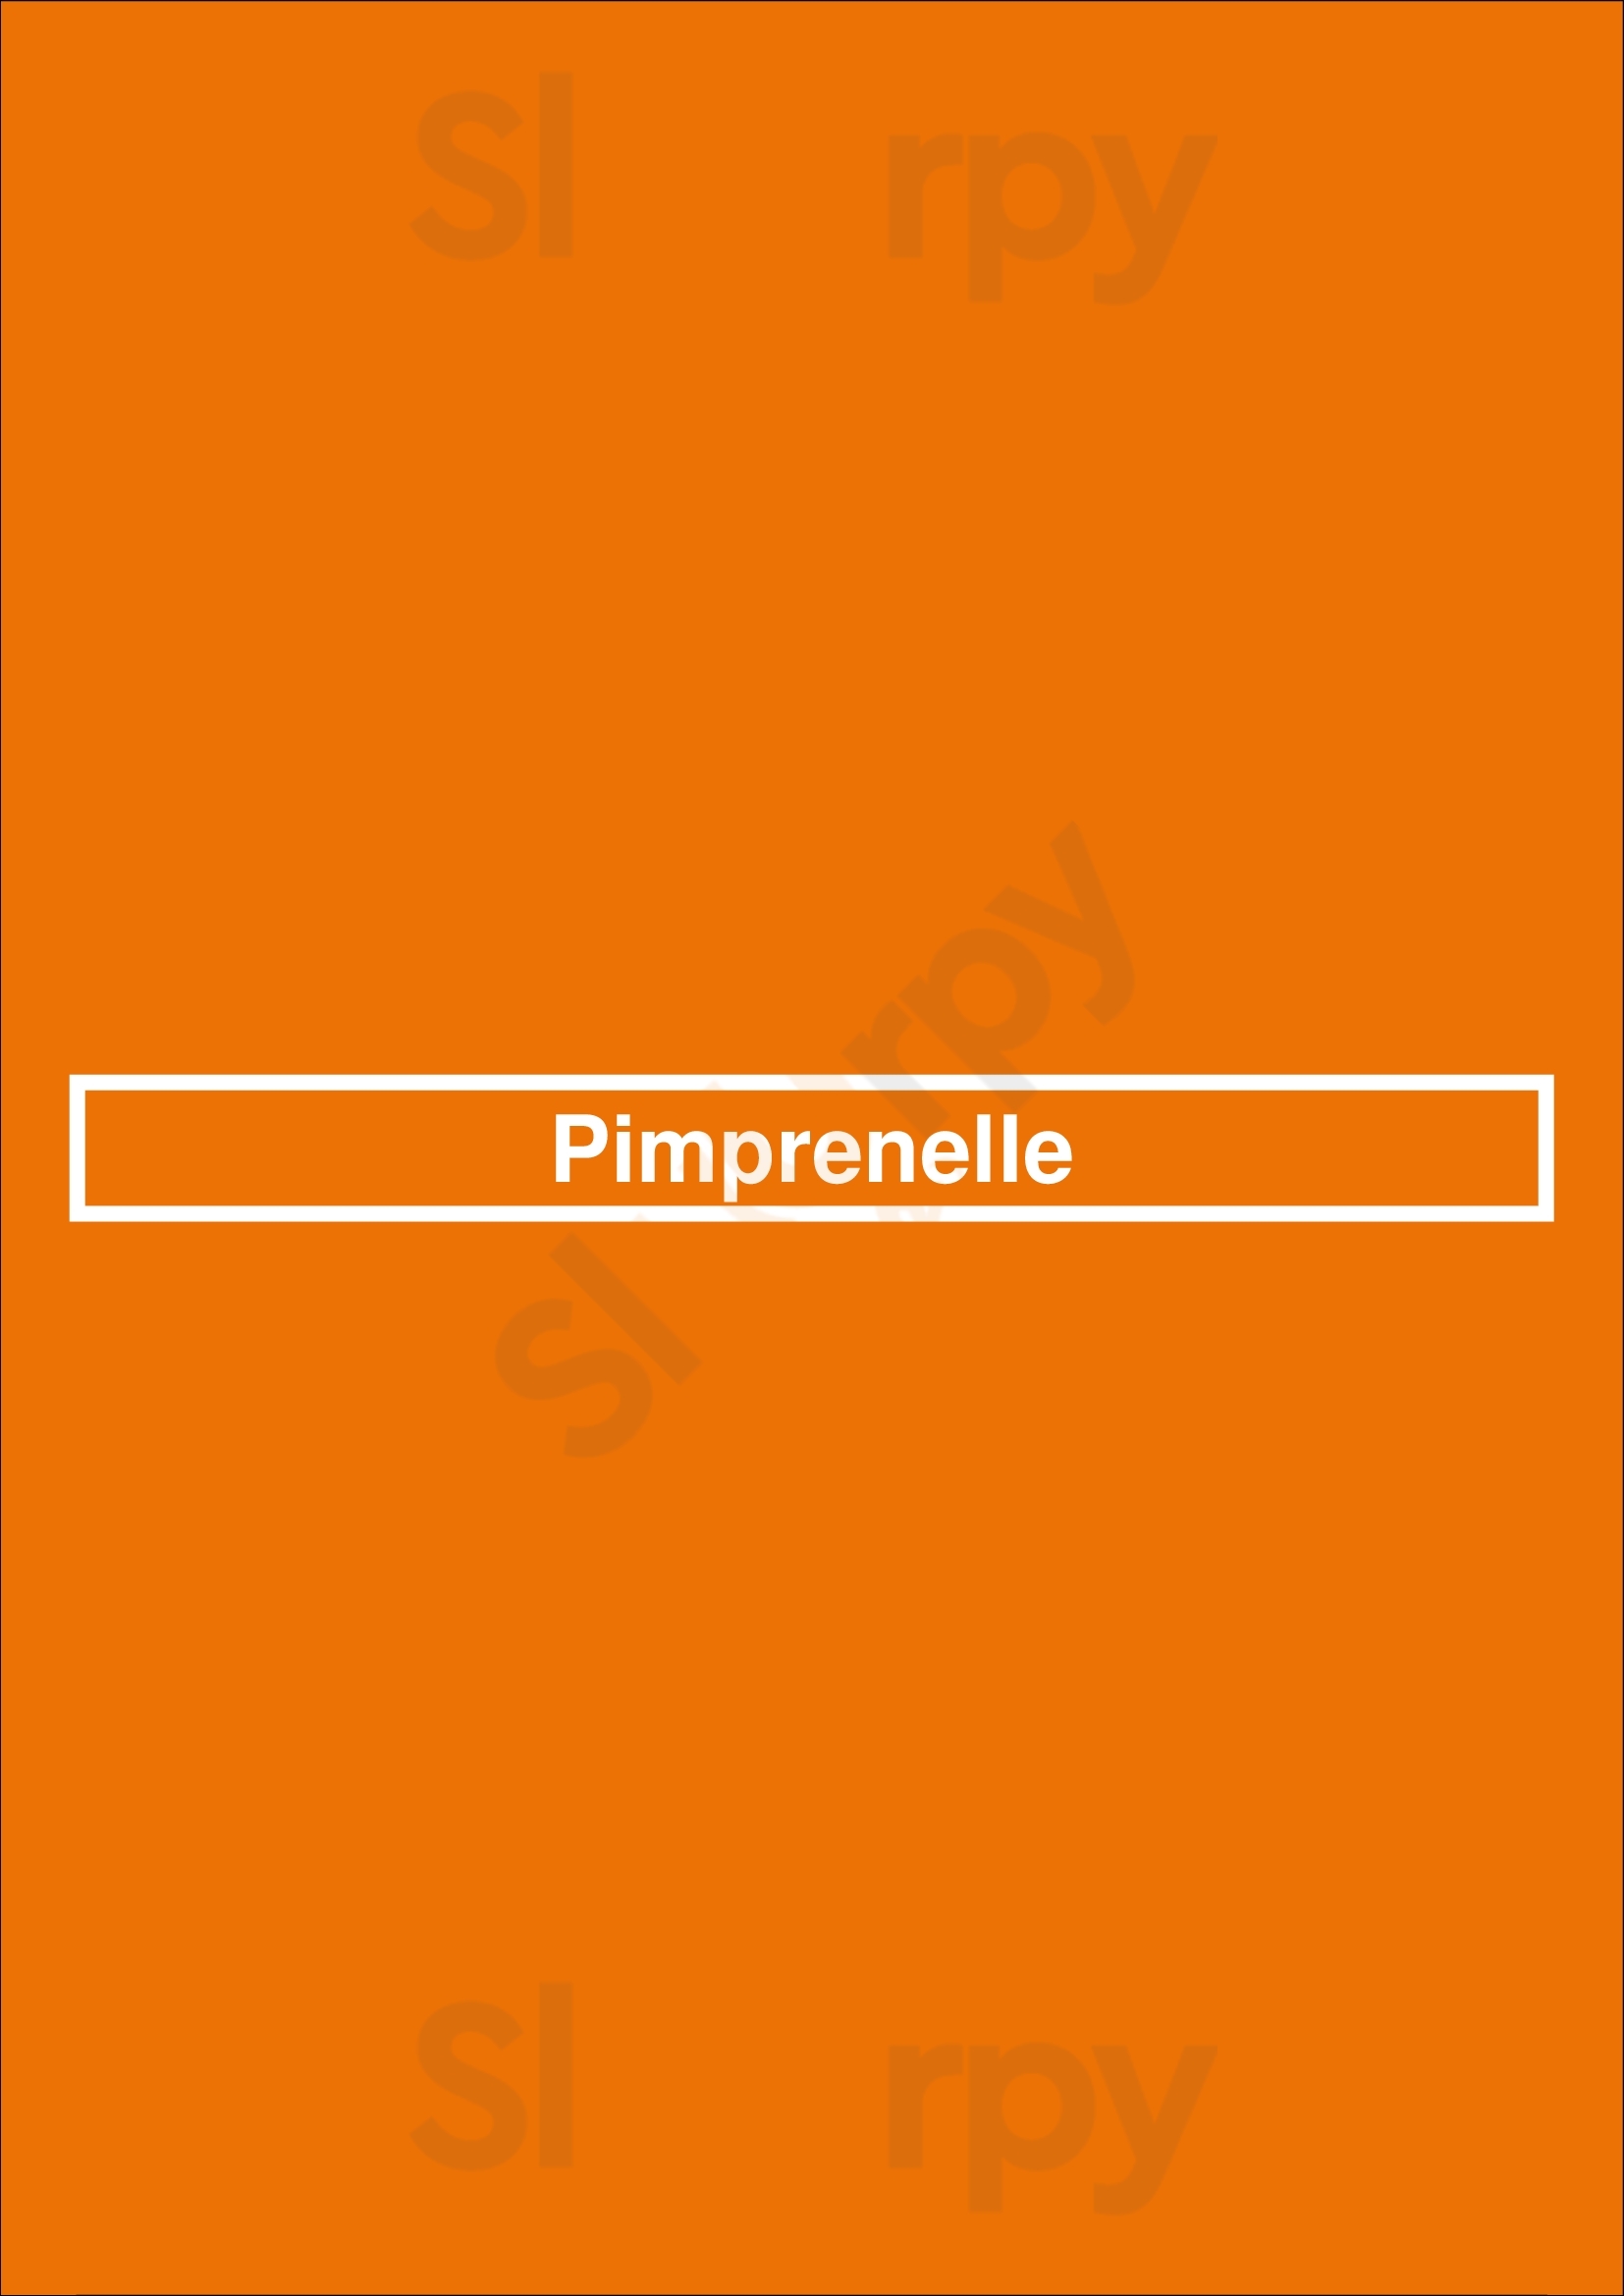 Pimprenelle Lyon Menu - 1